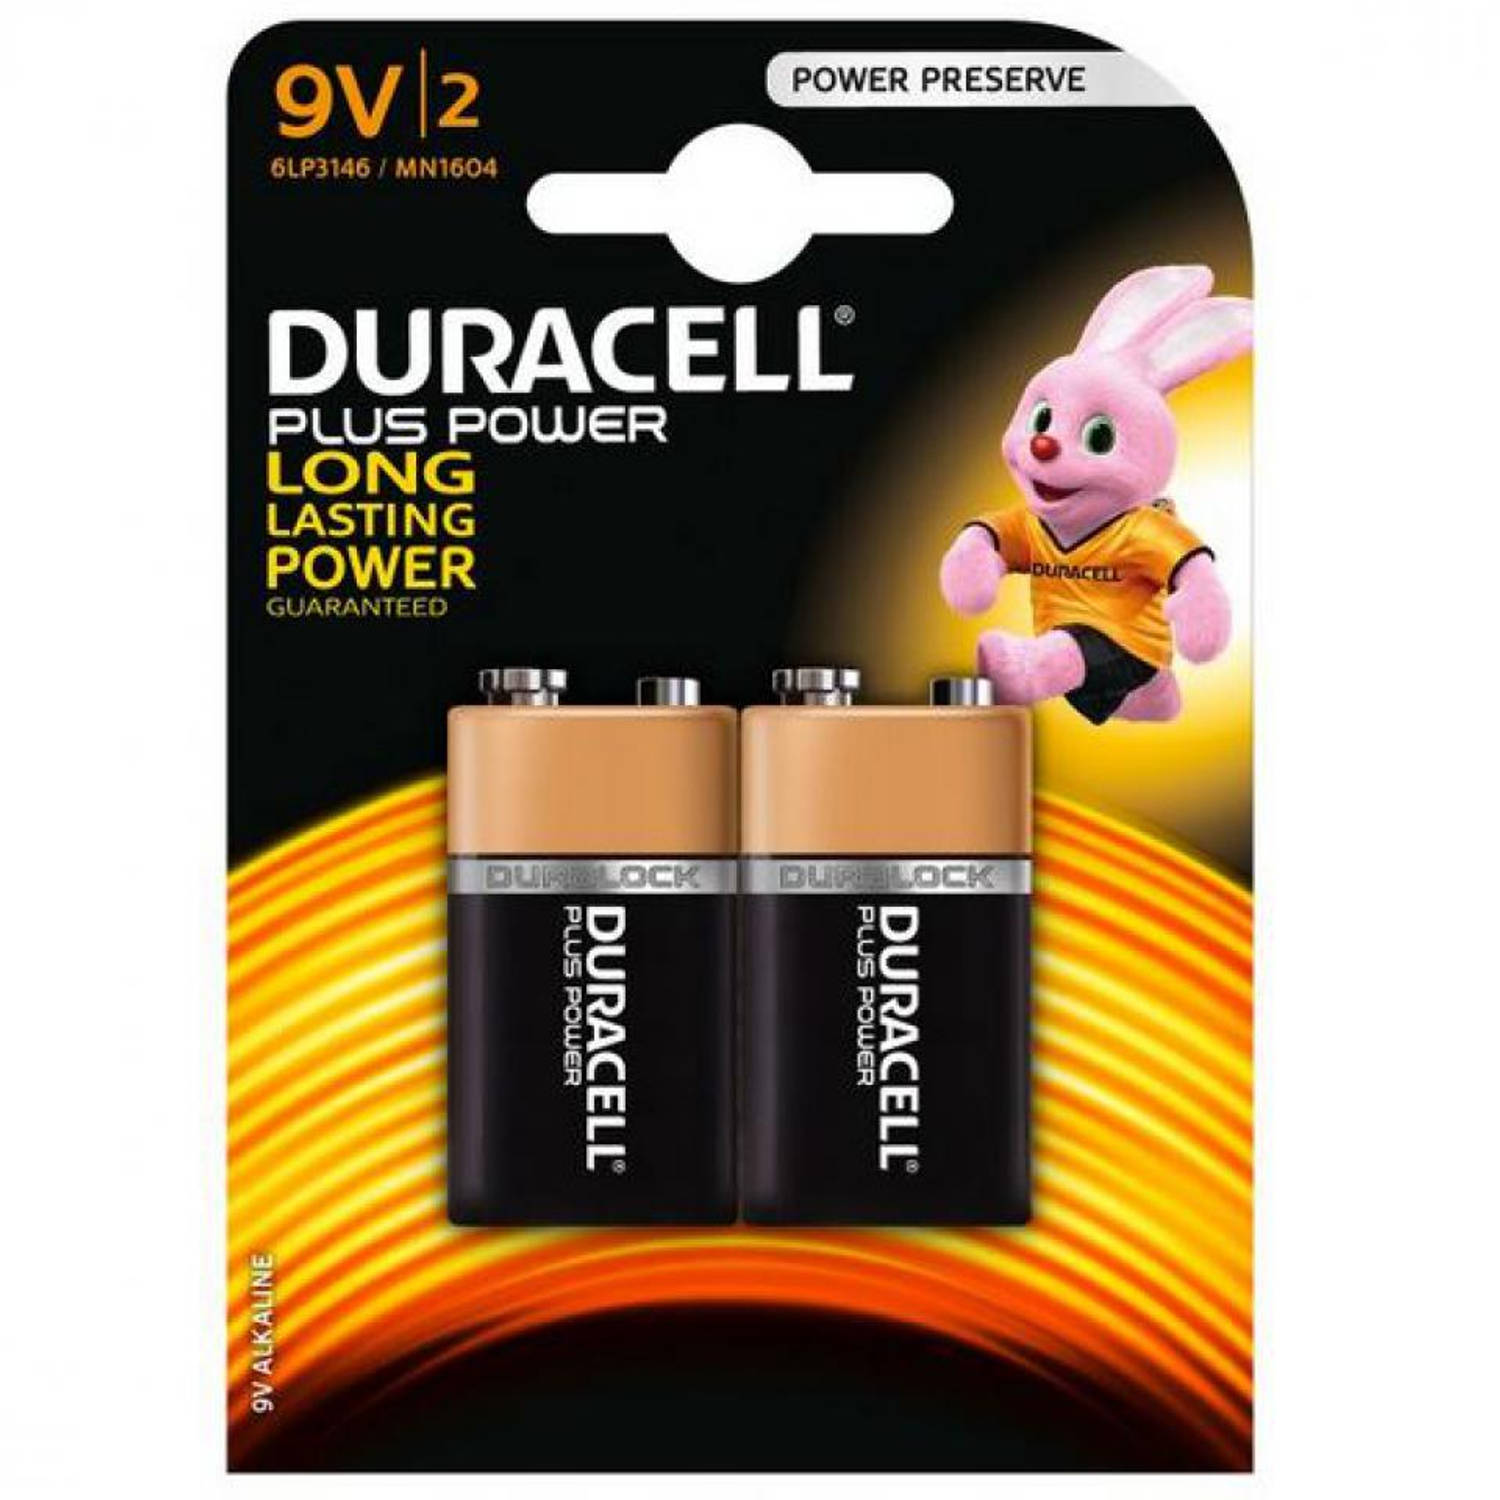 Duracell Plus Power 9V alkaline batterijen - stuks | Blokker